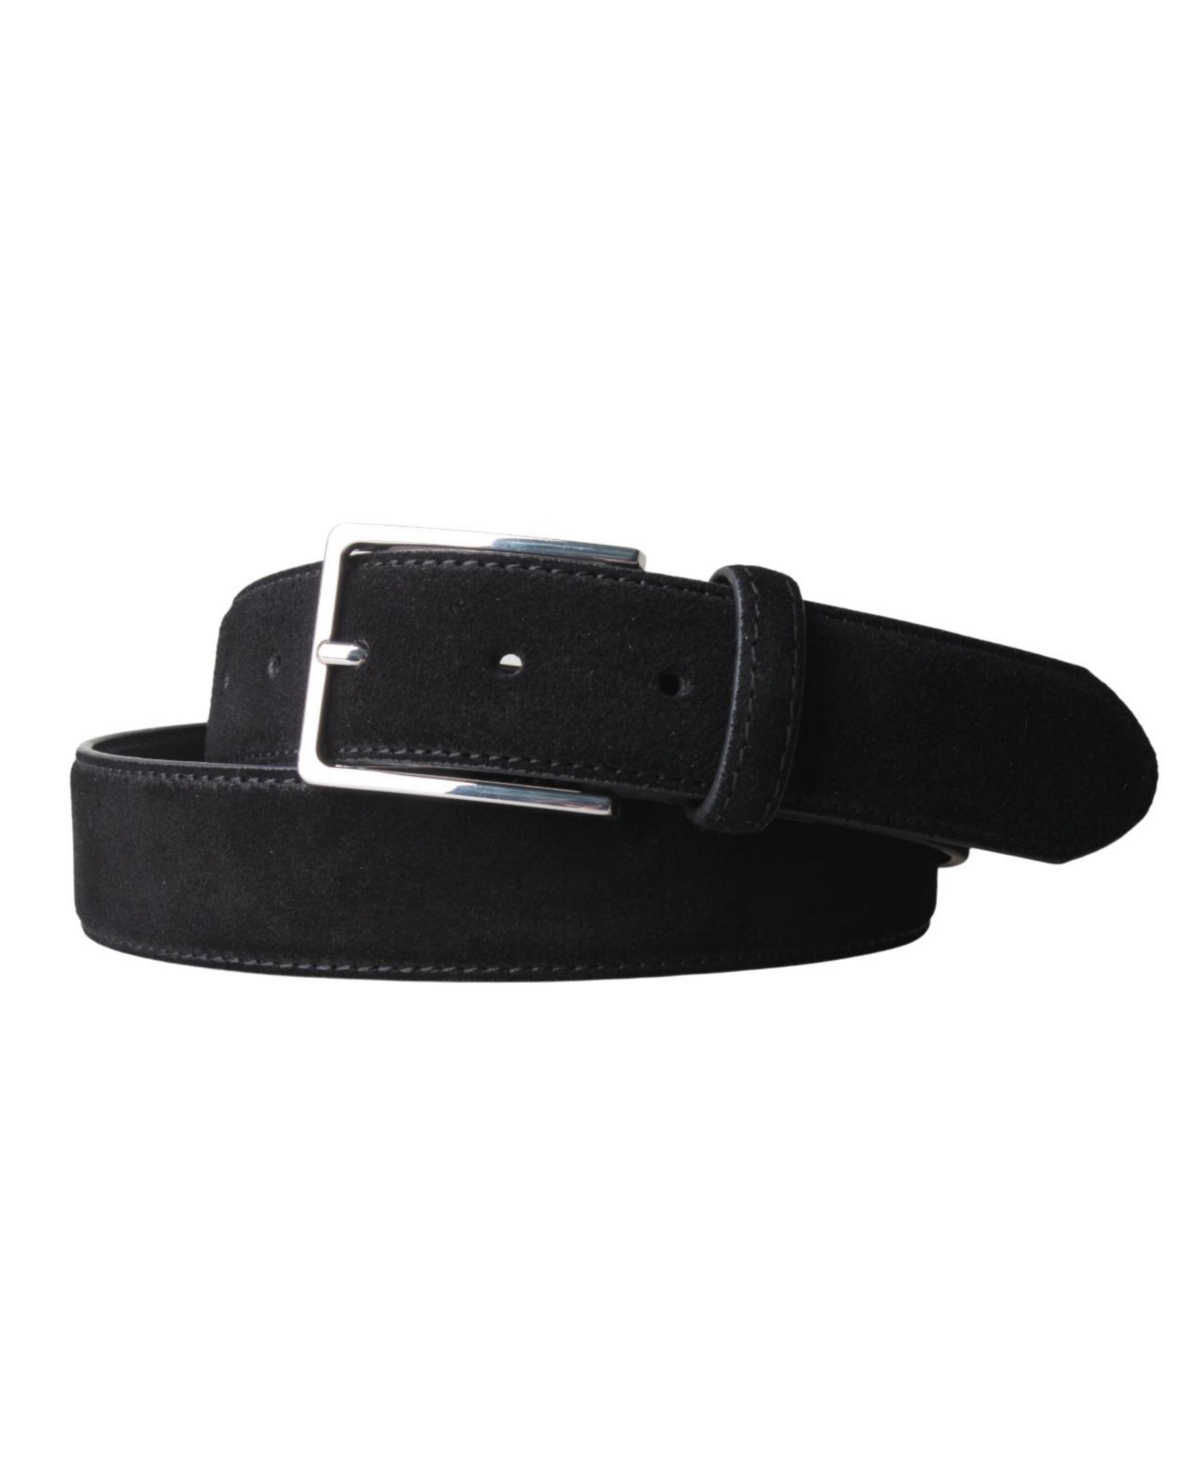 Clothing Men's Suede Leather 3.5 Cm Belt - Black